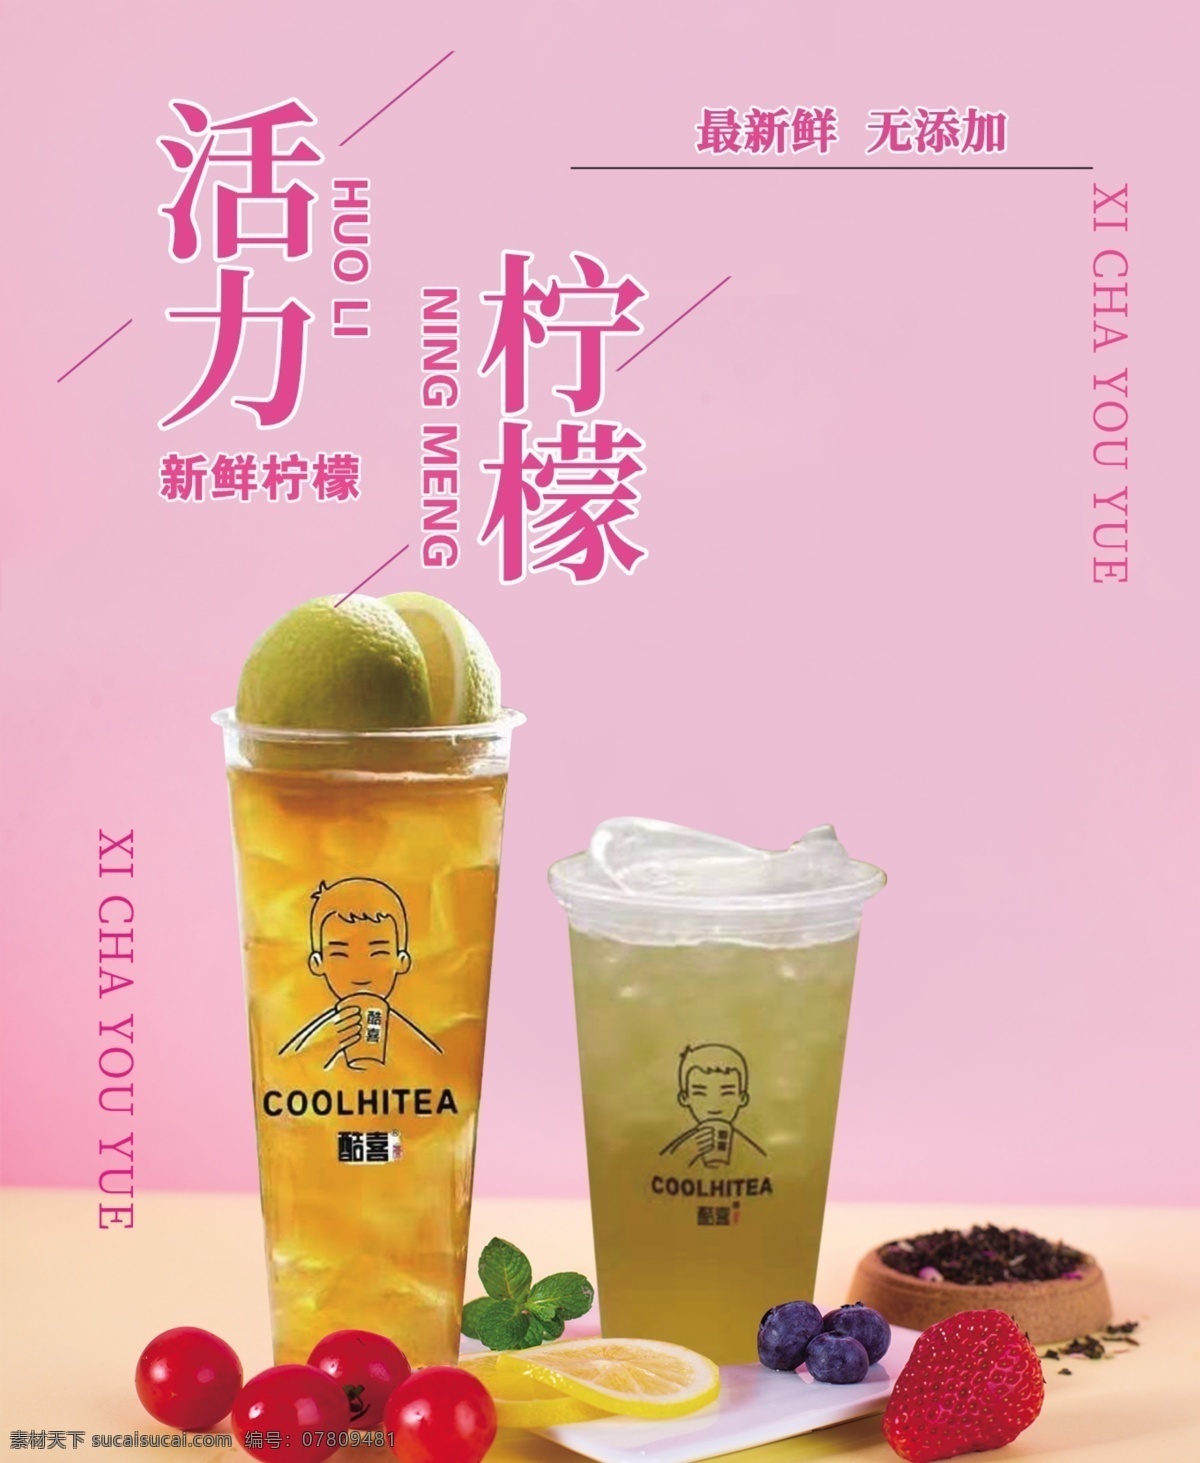 水果茶海报 水果茶灯片 饮品灯片 饮料灯片 柠檬茶 饮品海报